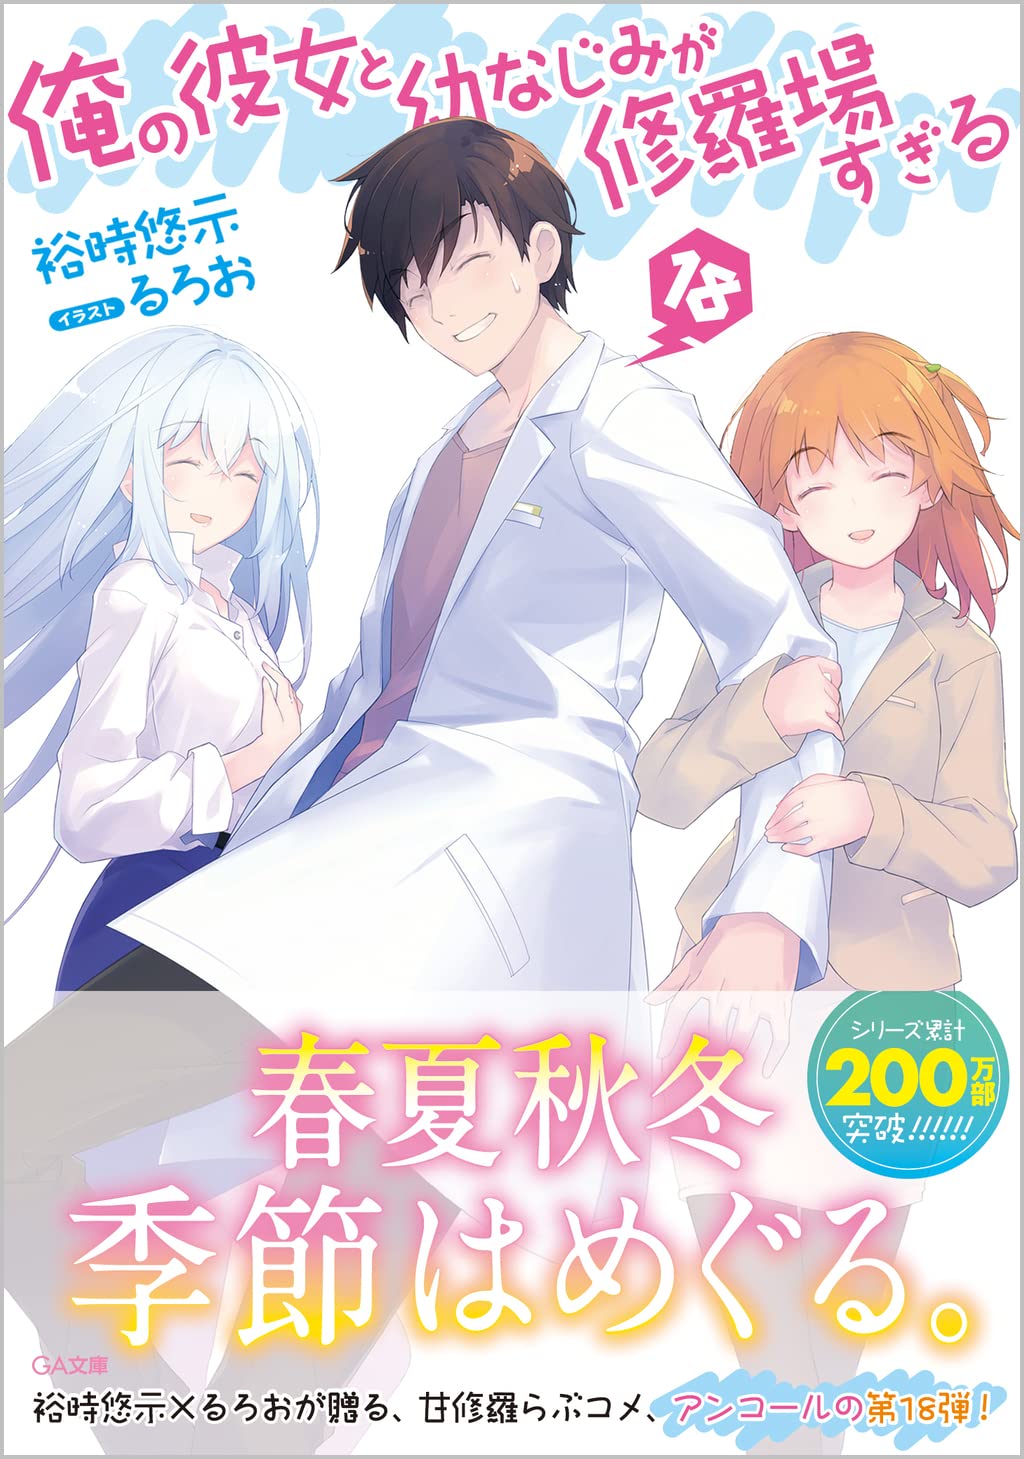 JAPAN manga: Oreshura / Ore no Kanojo to Osananajimi ga Shuraba Sugiru  Complete